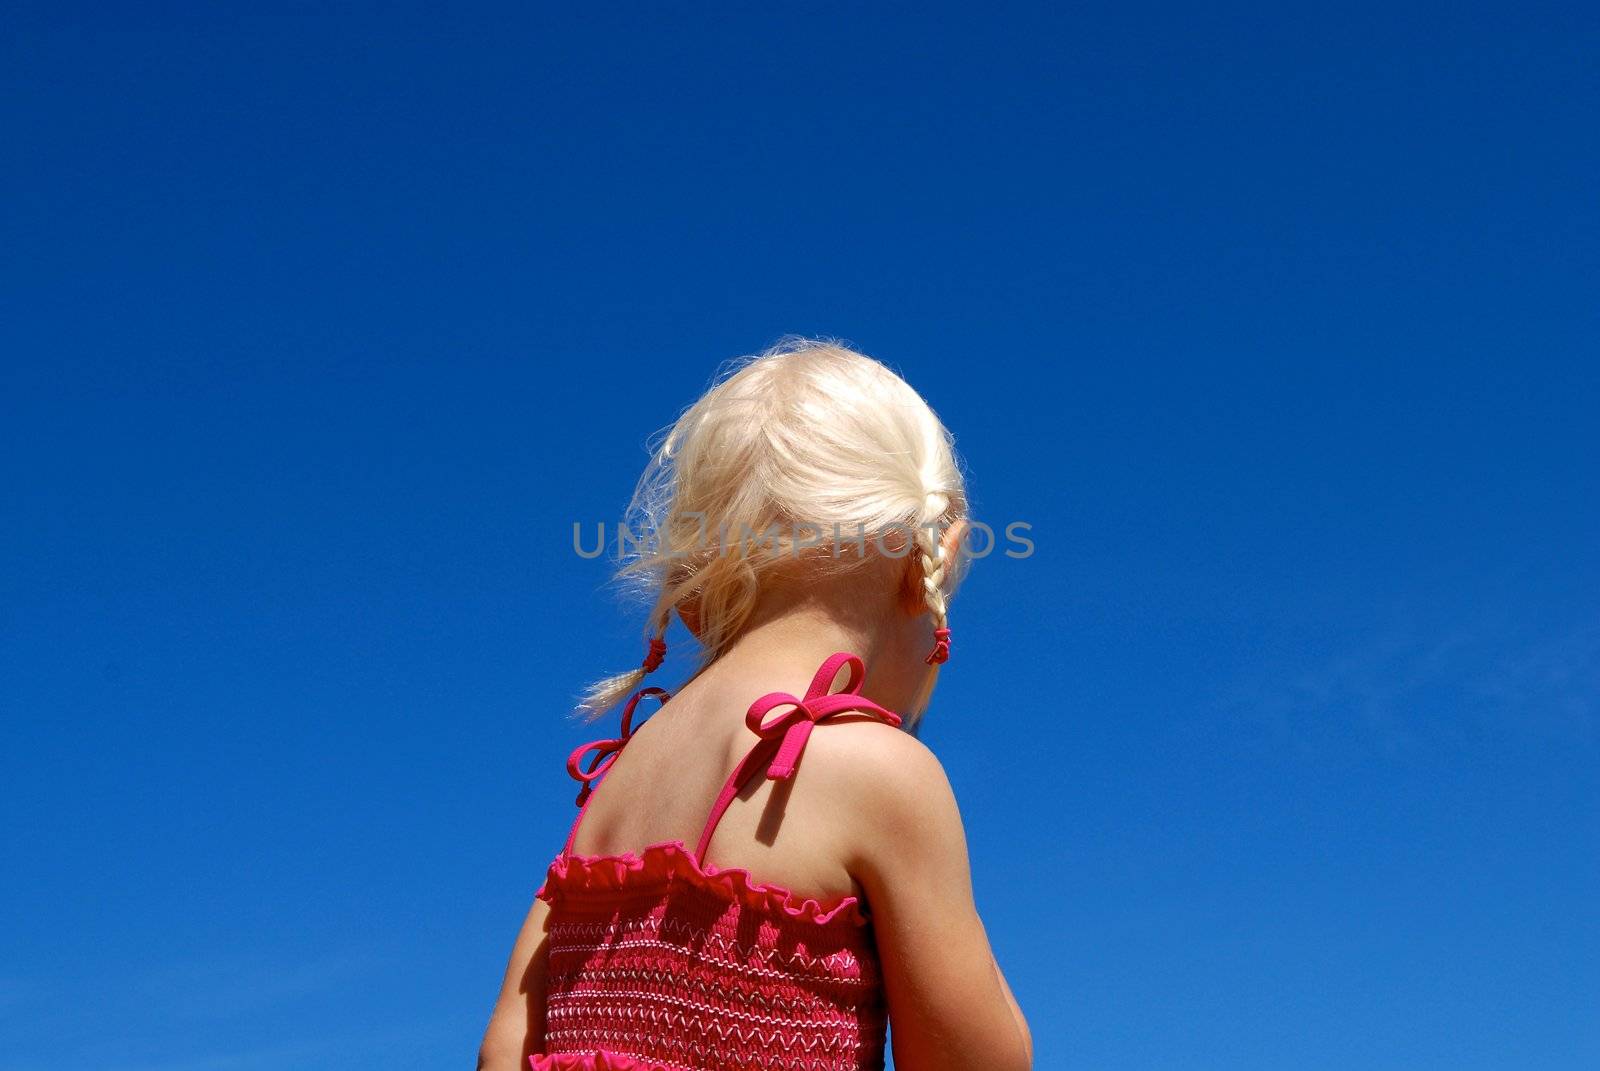 Scandinavian Lifestyle - girl's back against blue sky by Bildehagen